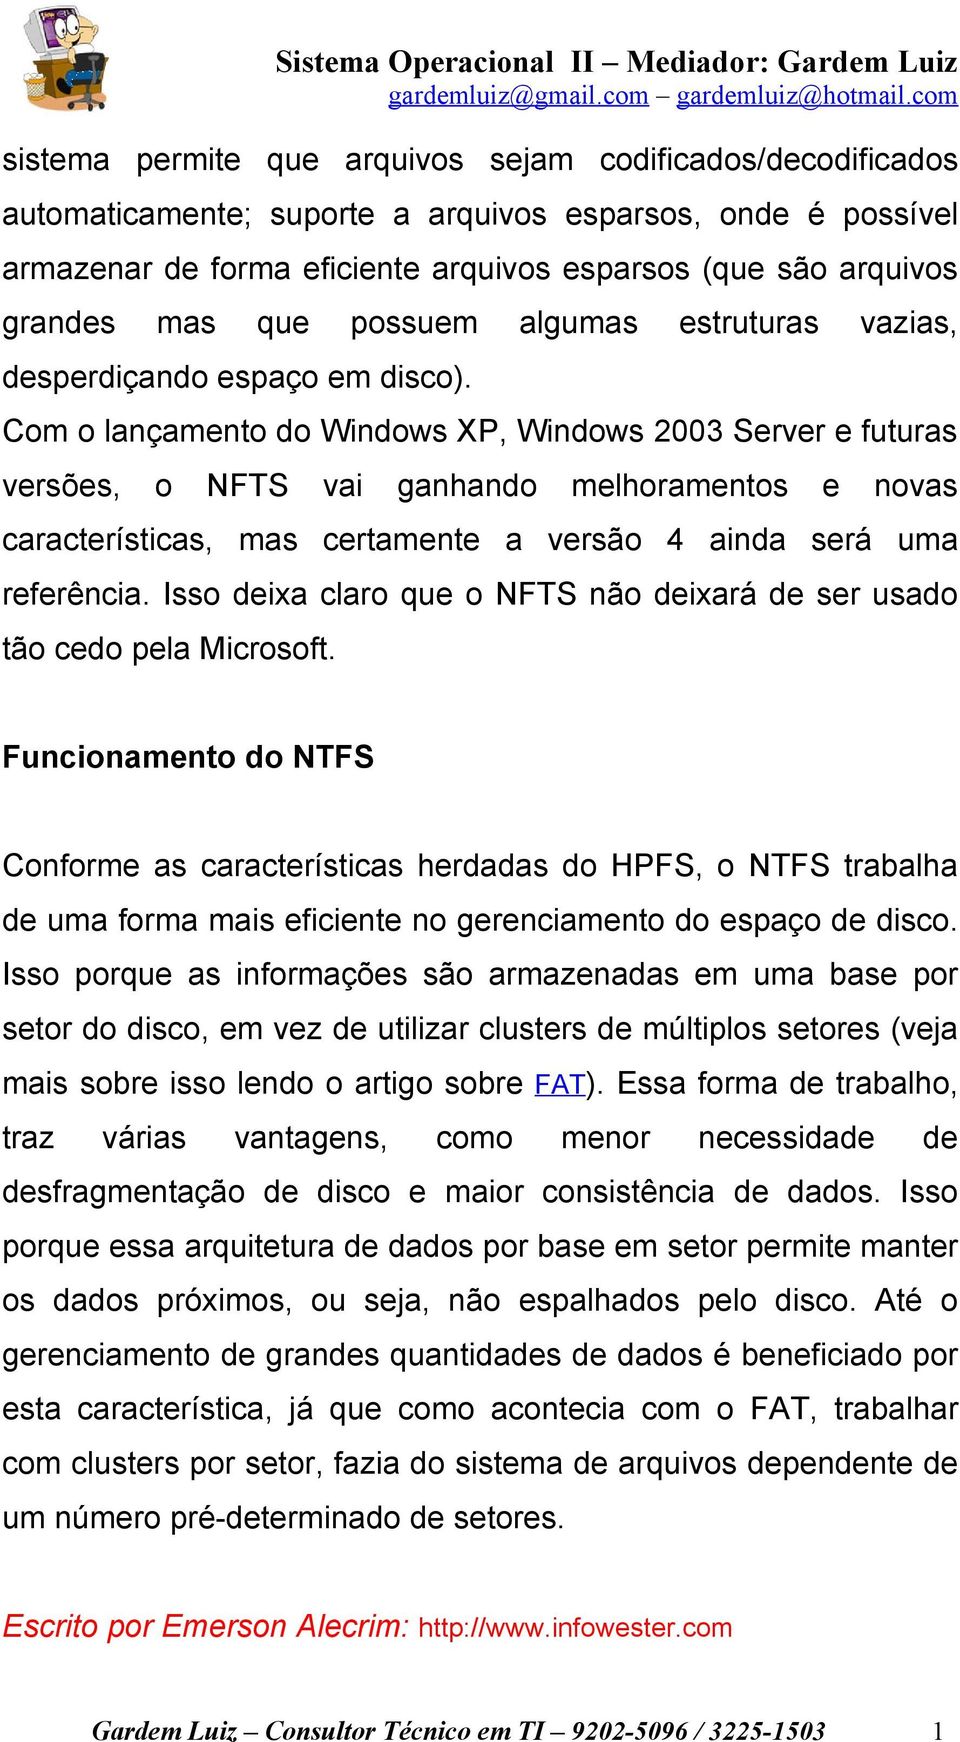 Com o lançamento do Windows XP, Windows 2003 Server e futuras versões, o NFTS vai ganhando melhoramentos e novas características, mas certamente a versão 4 ainda será uma referência.